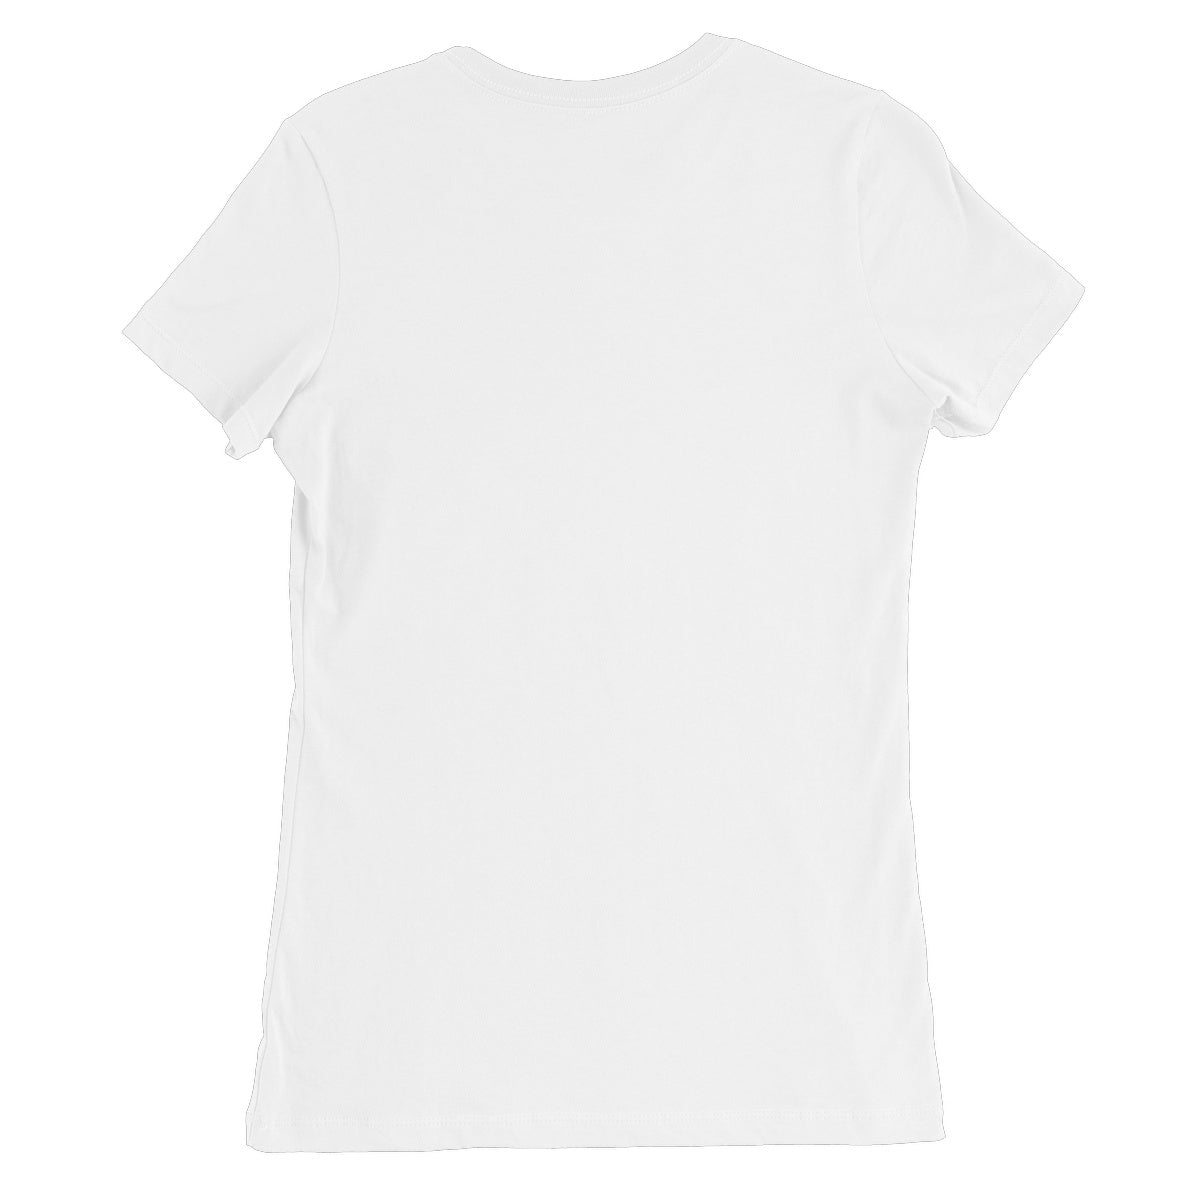 Kuen's Surface, Mesh Women's Favourite T-Shirt